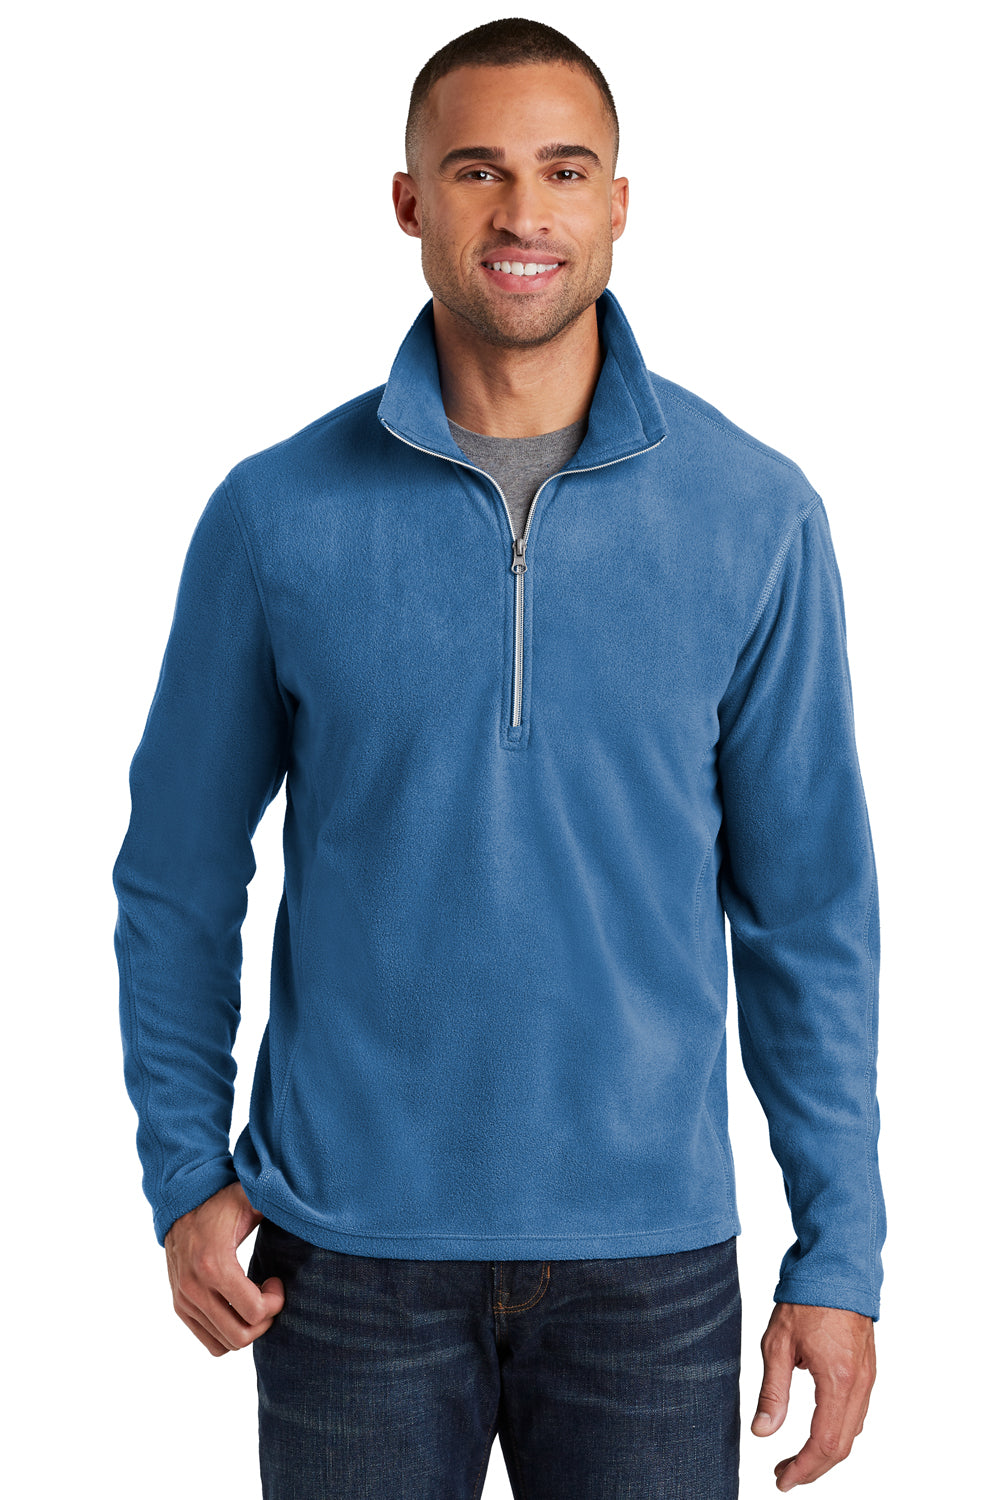 Port Authority F224 Mens Microfleece 1/4 Zip Sweatshirt Royal Blue Front